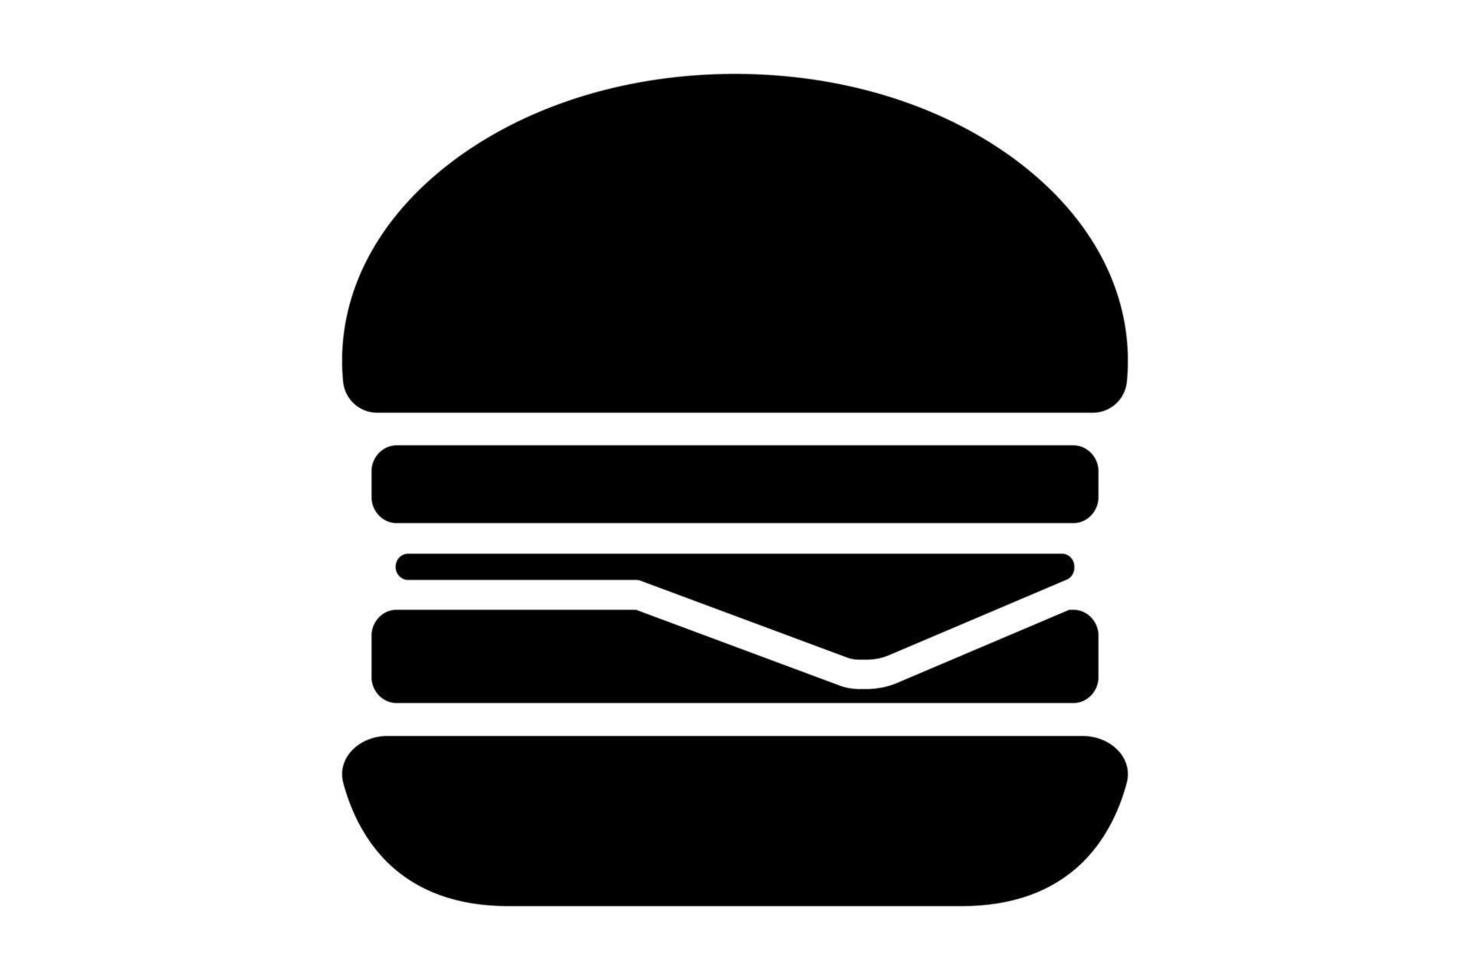 Hamburger-Symbol. schnellimbissillustration mit flachen formen. flaches Schwarz-Weiß-Vektor-Burger-Symbol. vektor